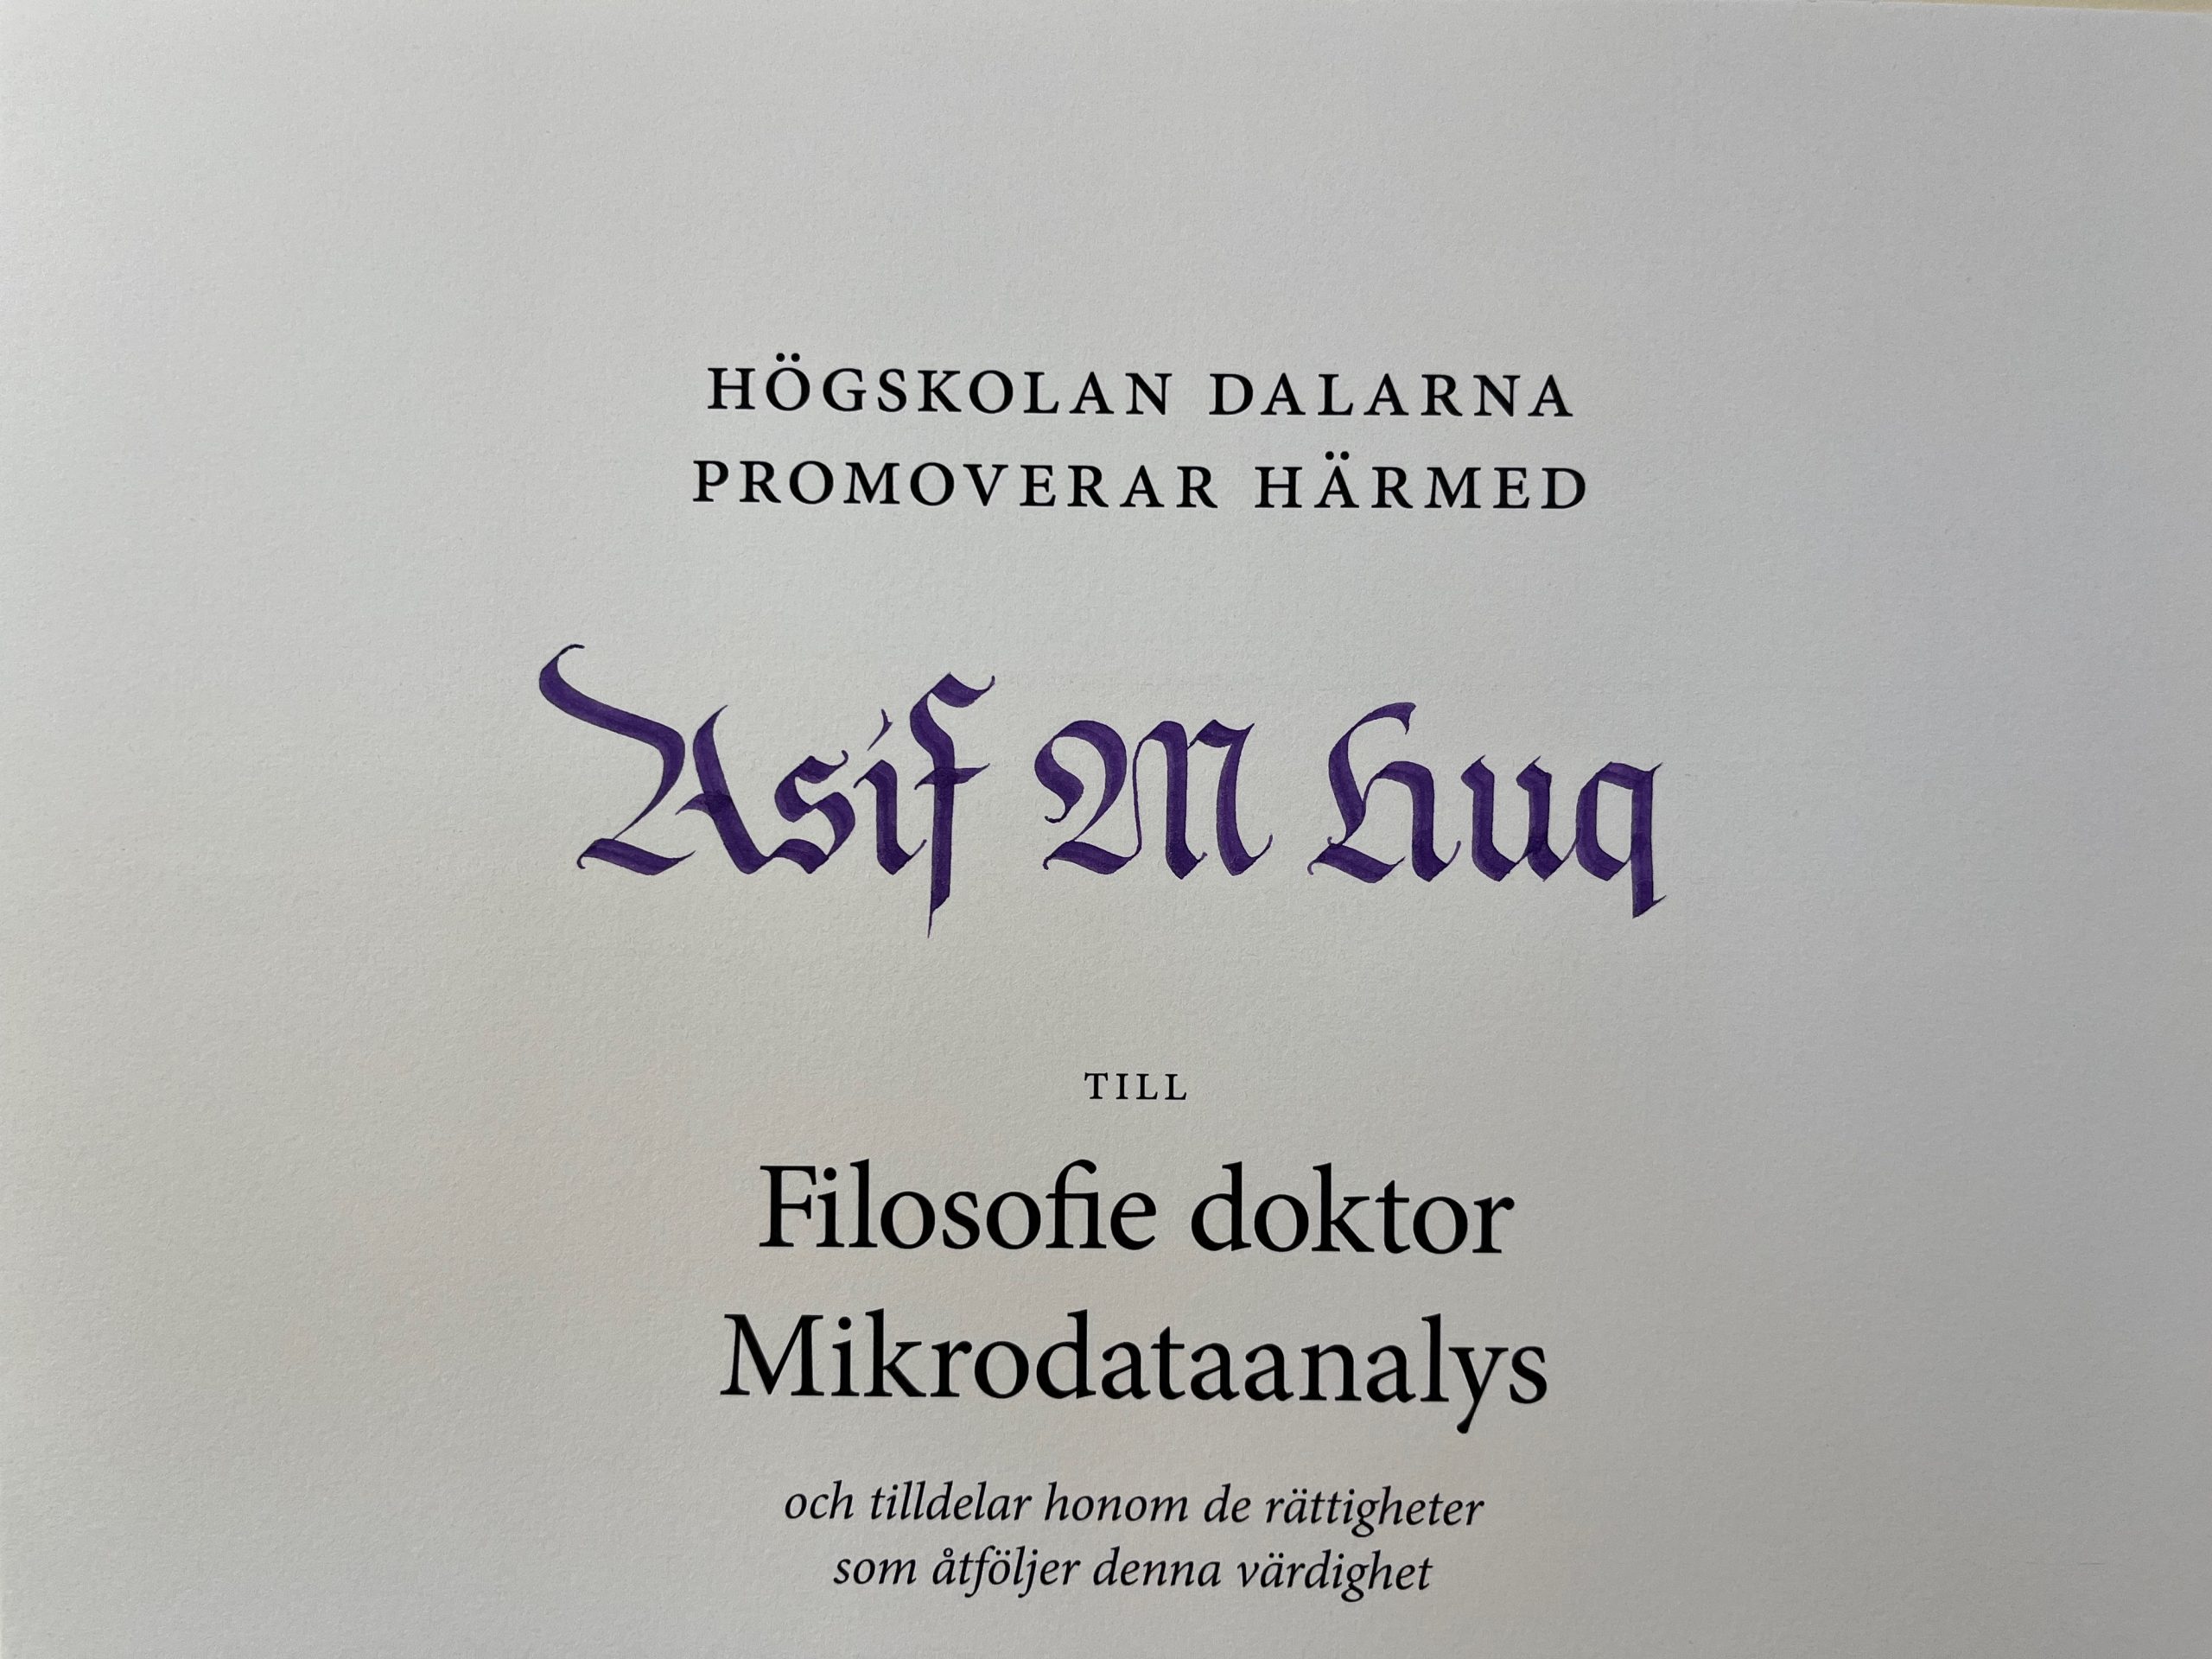 Diplom Högskolan Dalarna